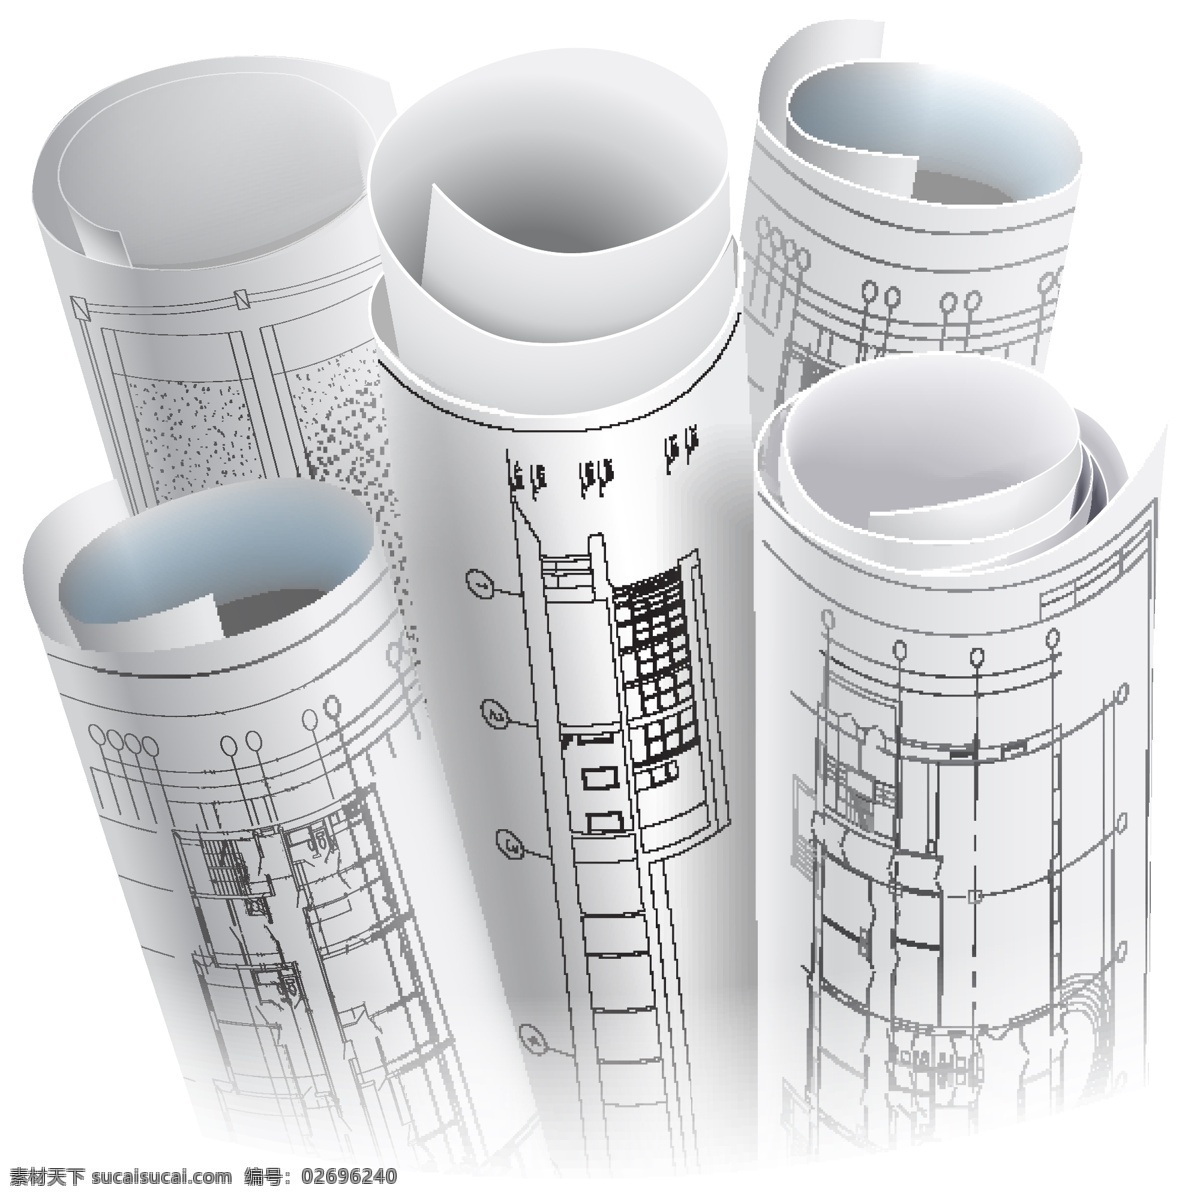 建筑图纸 3d建筑模型 设计图 楼房 图纸 示意图 平面图 工程图 格局 装修 都市 城市 施工图 工程 建筑 效果图 矢量 传统建筑 建筑家居 城市建筑